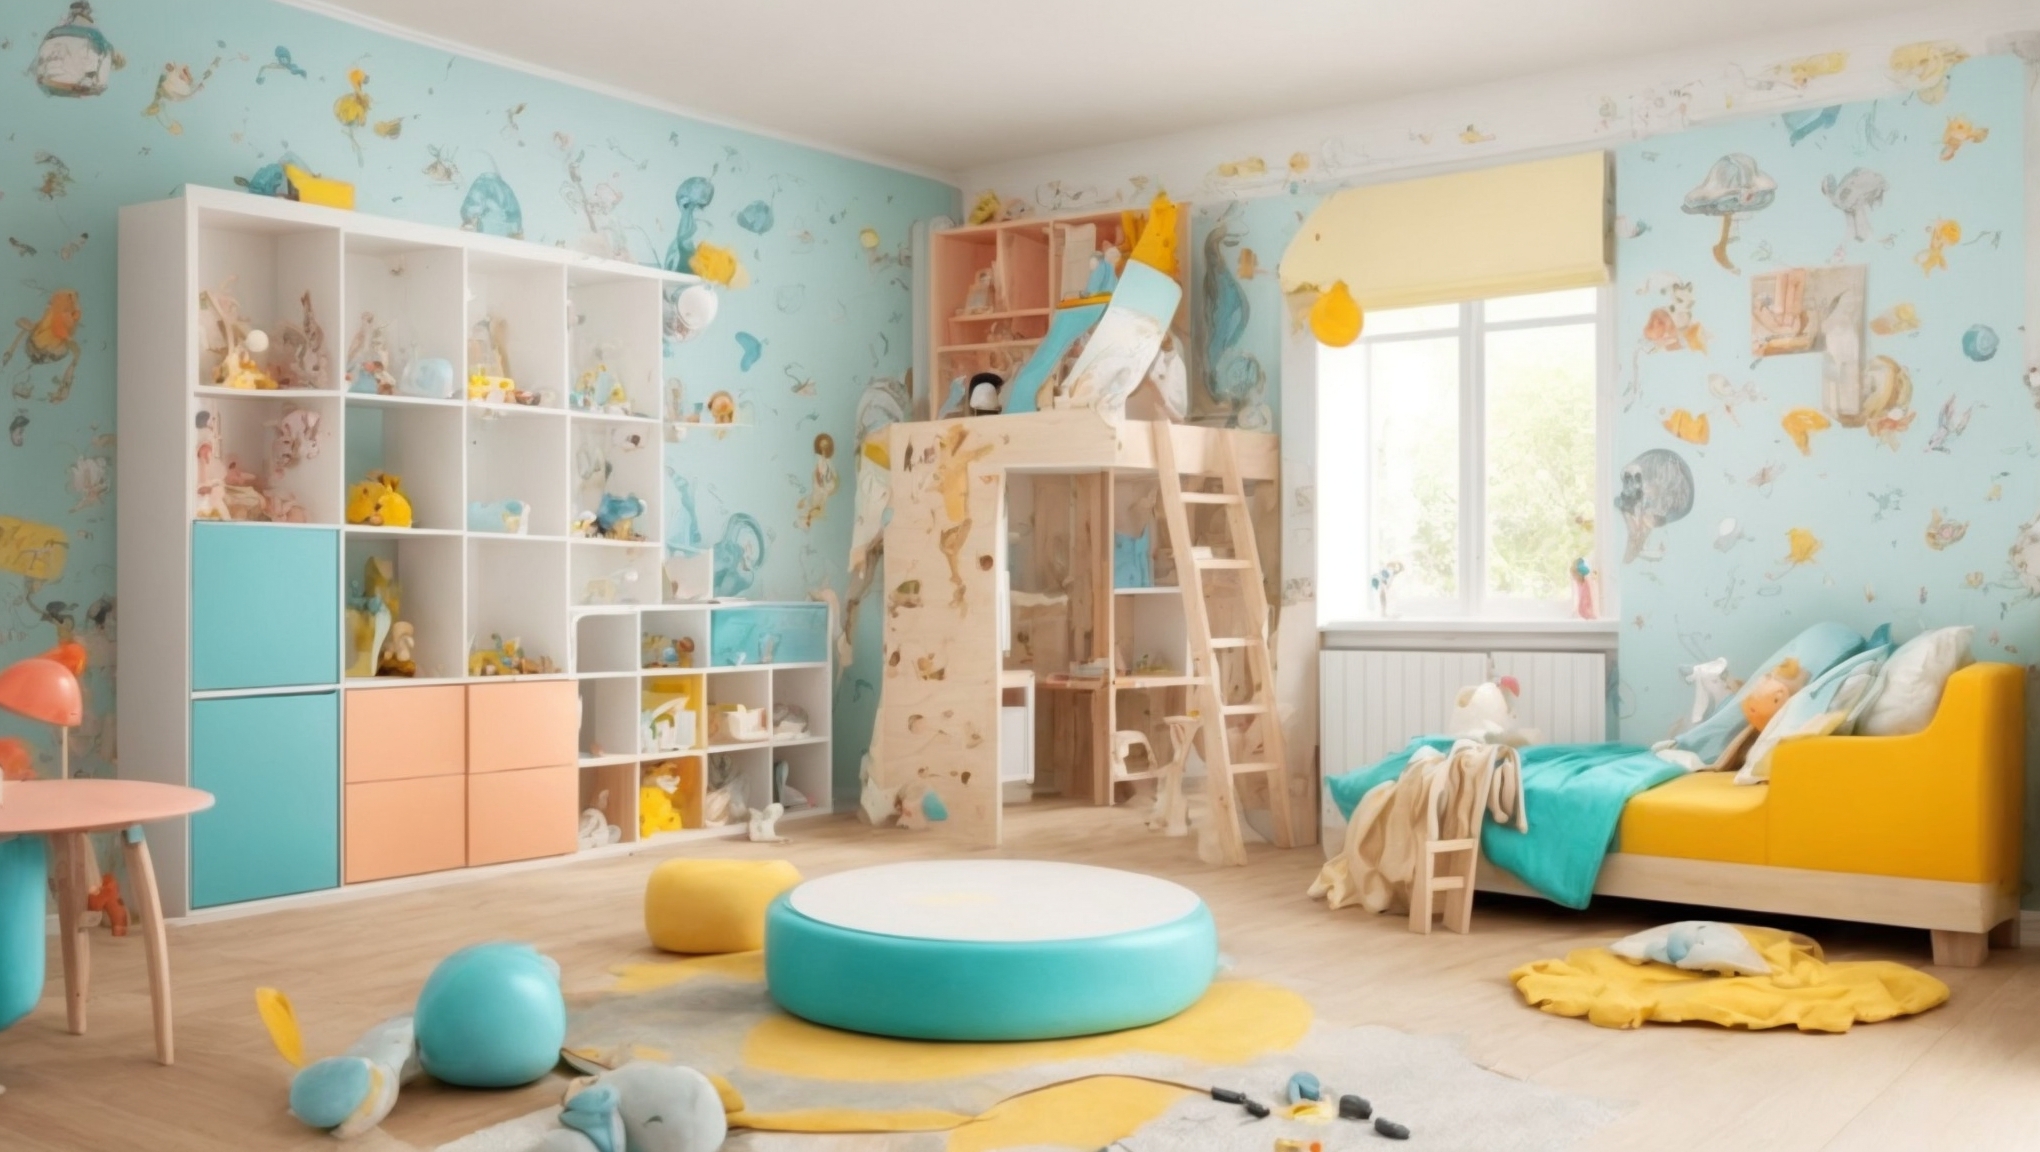 Ремонт детской комнаты безопасность и творческие решения